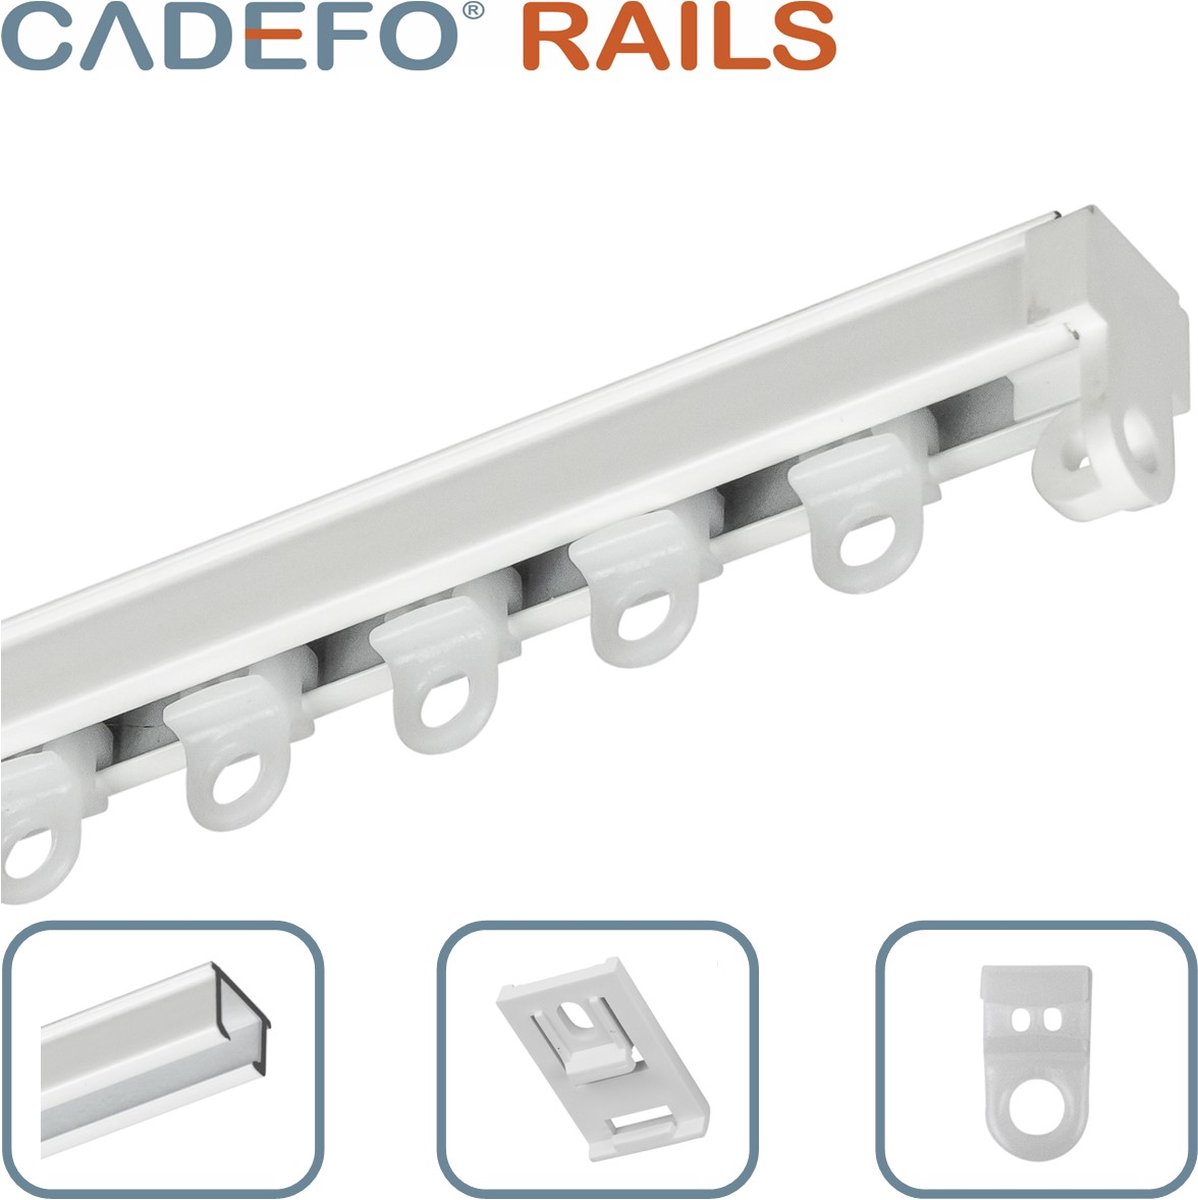 CADEFO RAILS (101 - 150 cm) Gordijnrails - Compleet op maat! - UIT 1 STUK - Leverbaar tot 6 meter - Plafondbevestiging - Lengte 136 cm